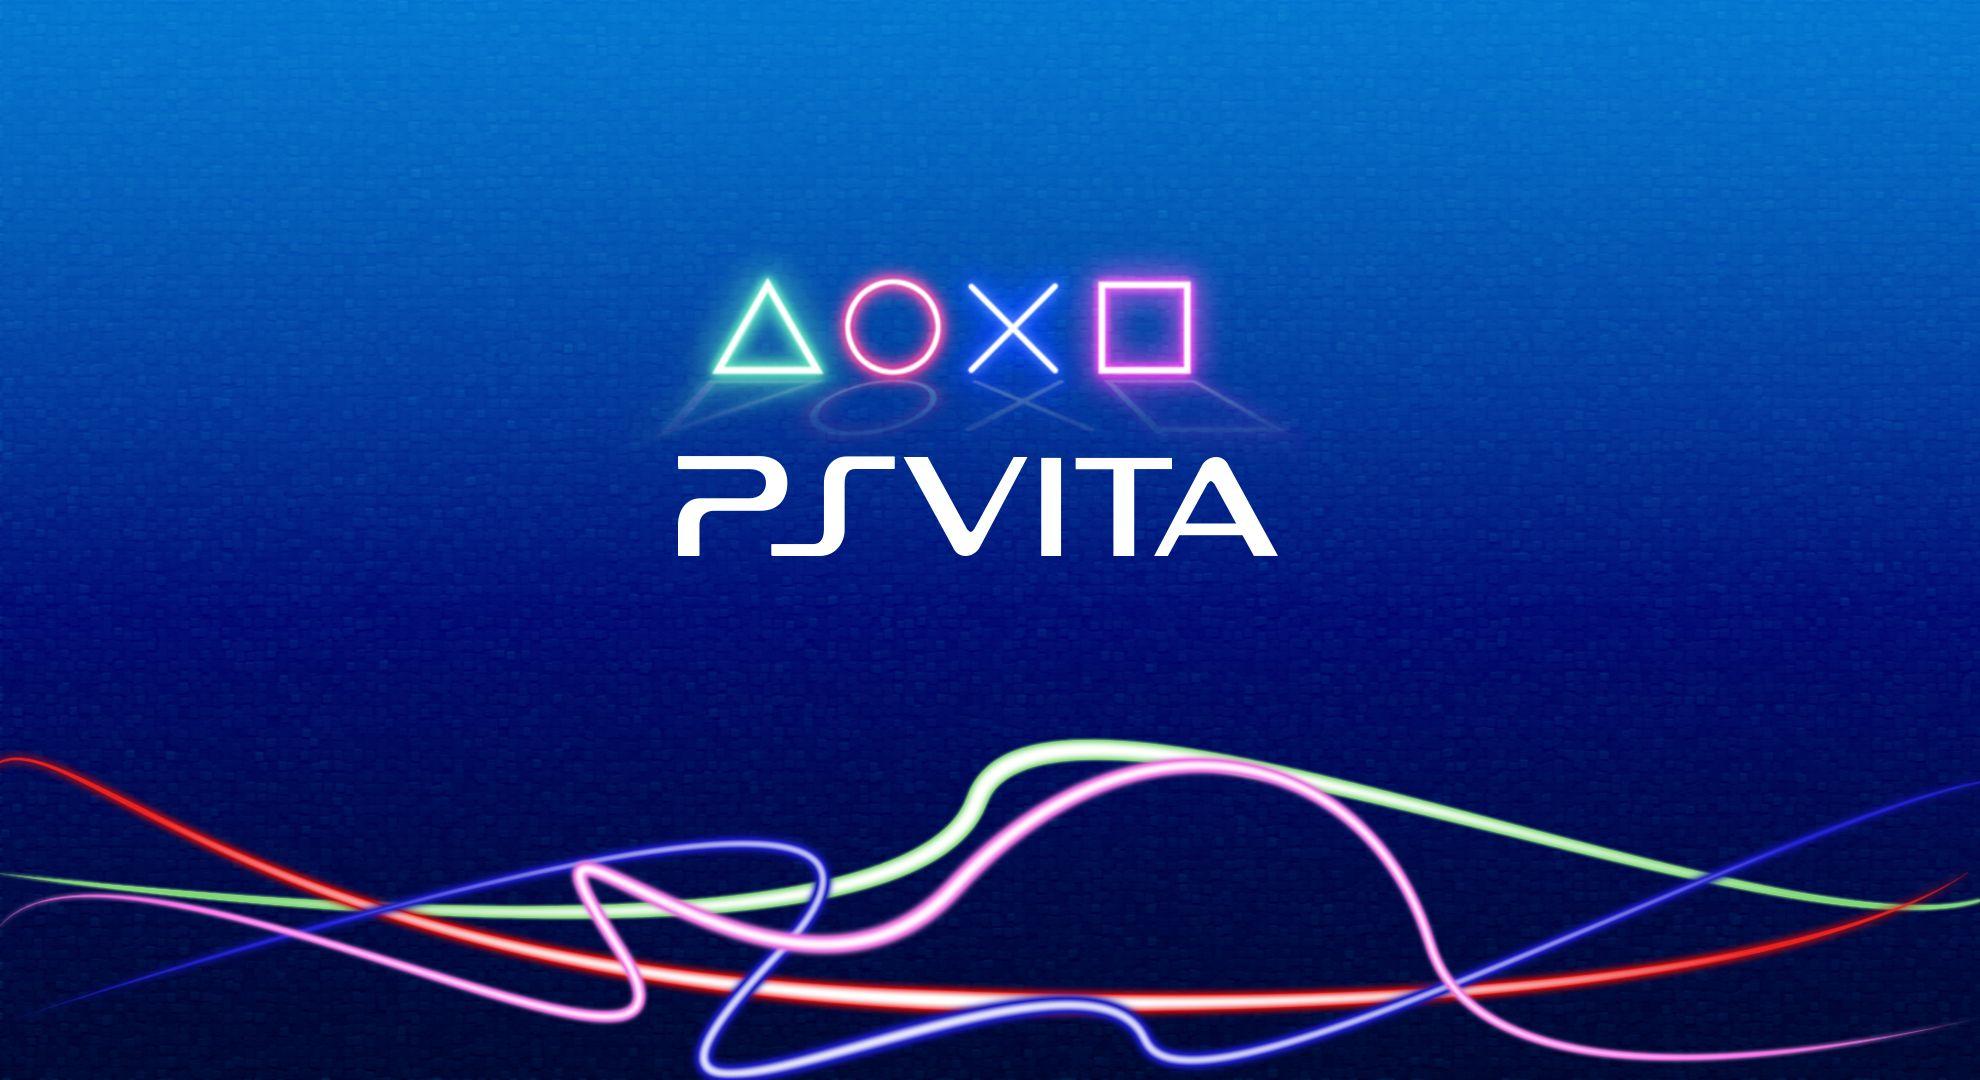 1980x1080 PS Vita Logo Hình nền.  Hình nền PS Vita, Hình nền PS Vita Crash Bandicoot và Hình nền PlayStation Vita